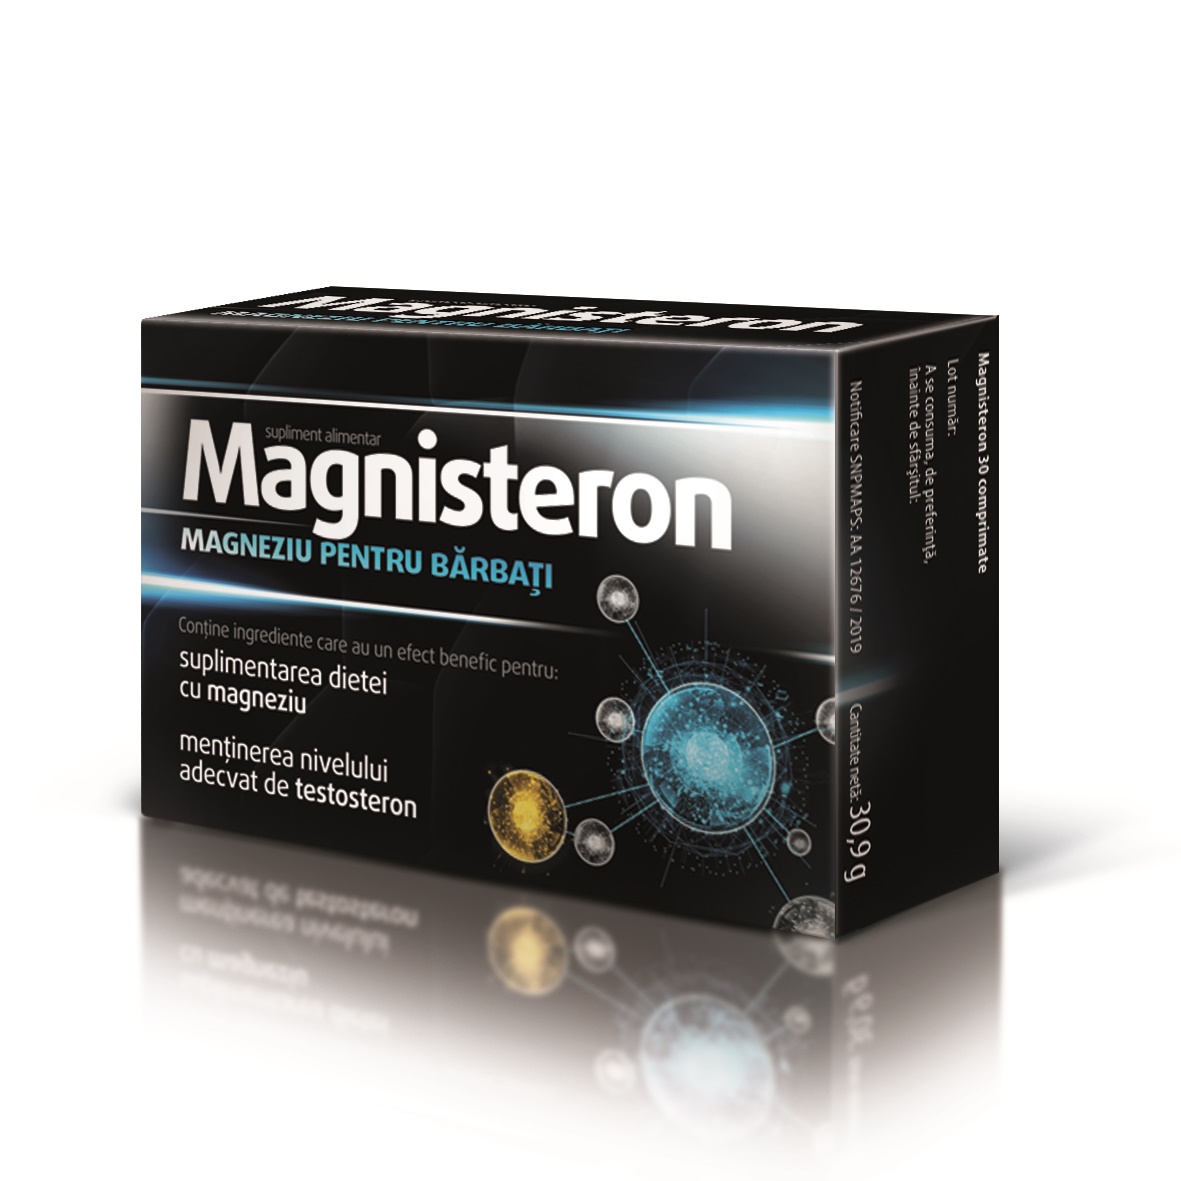 Tonice sexuale - Magnisteron magneziu pentru barbati, 30 comprimate, Aflofarm, nordpharm.ro